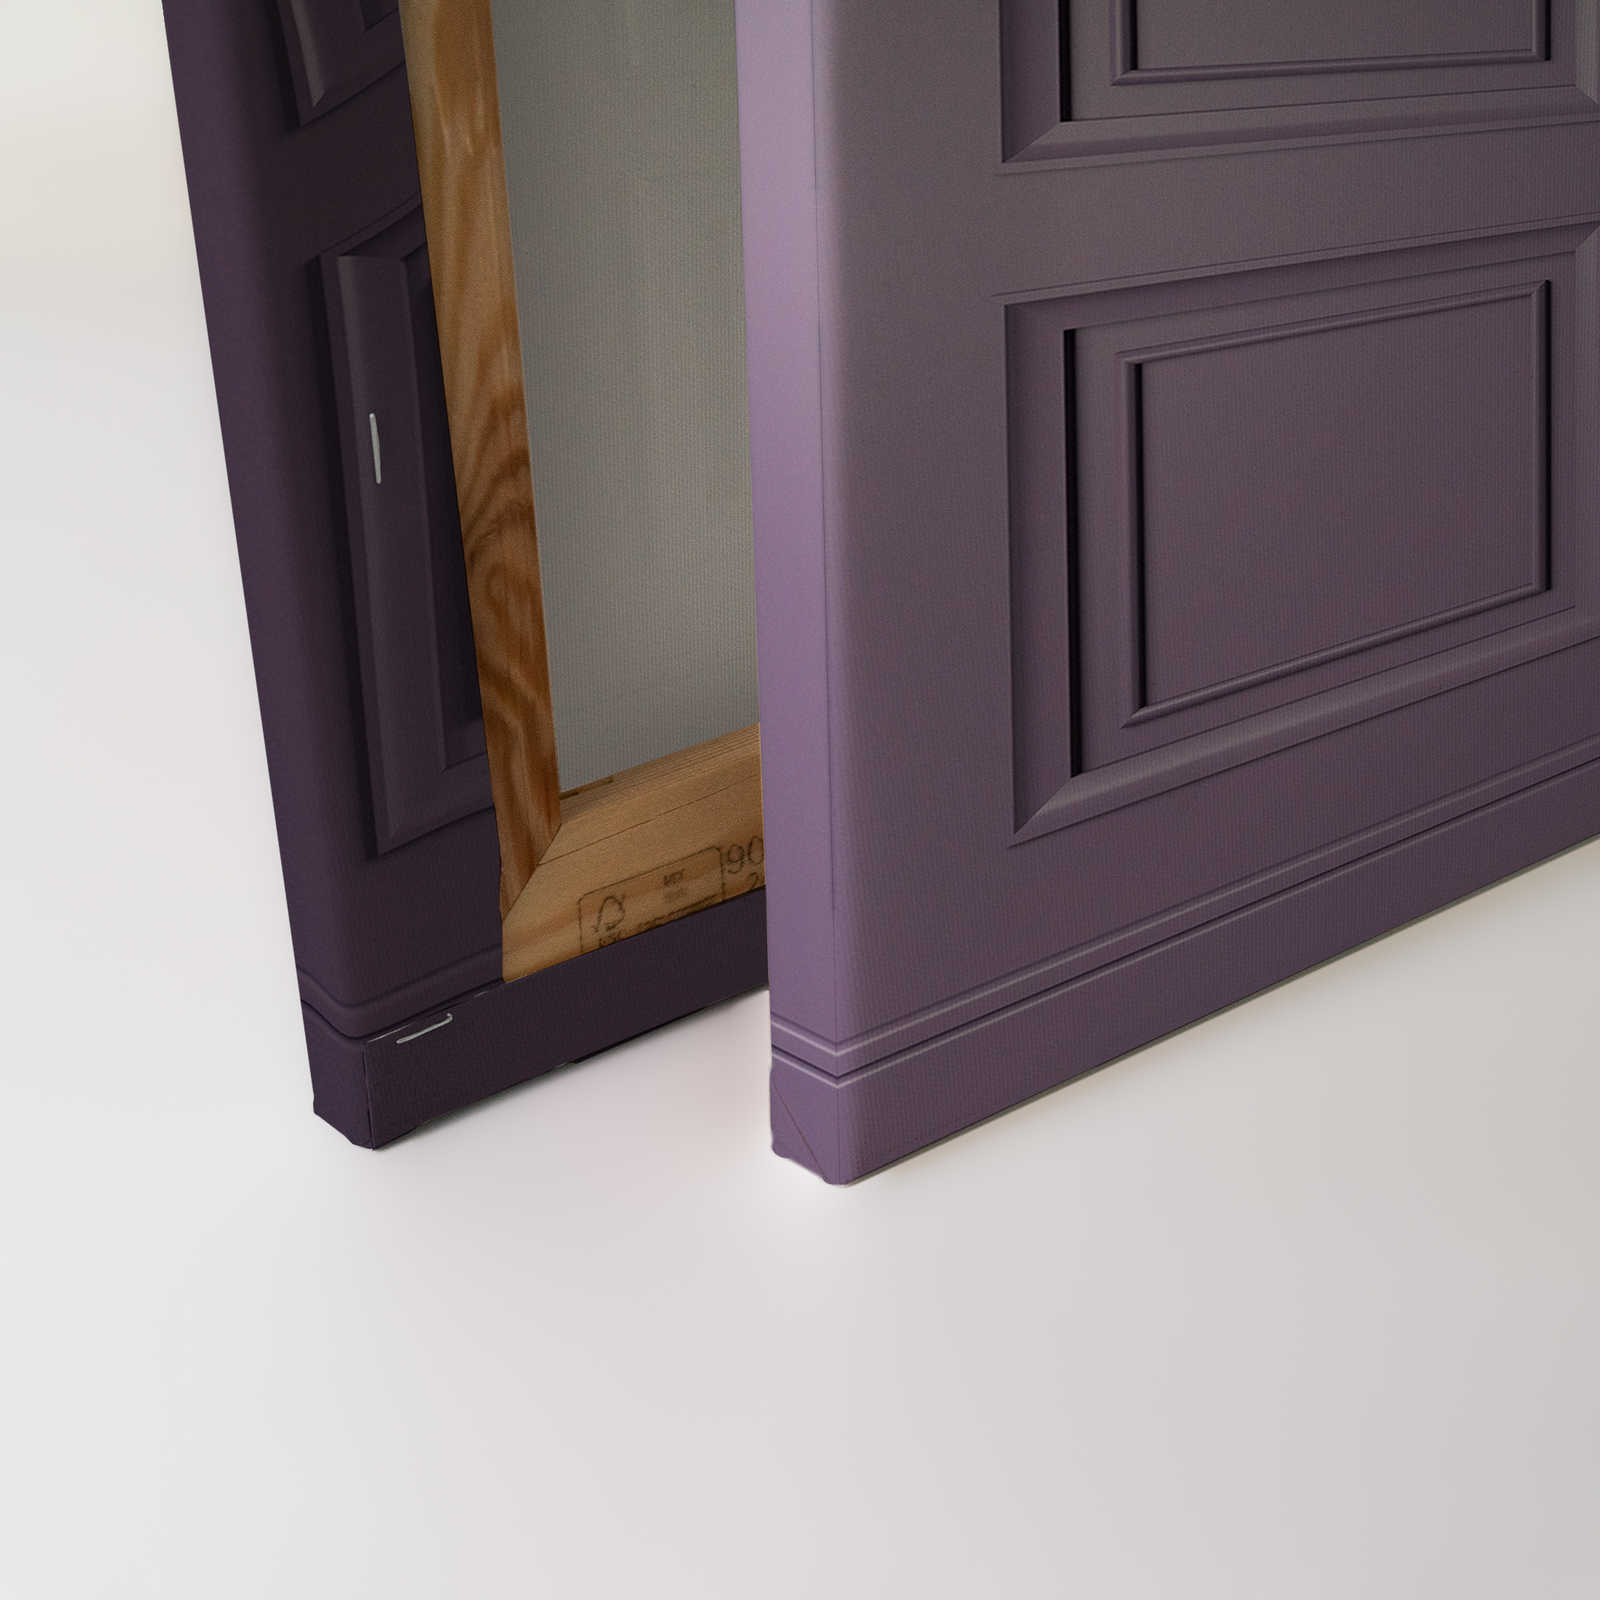             Kensington 3 - 3D Canvas painting wood paneling dark purple, violet - 1.20 m x 0.80 m
        